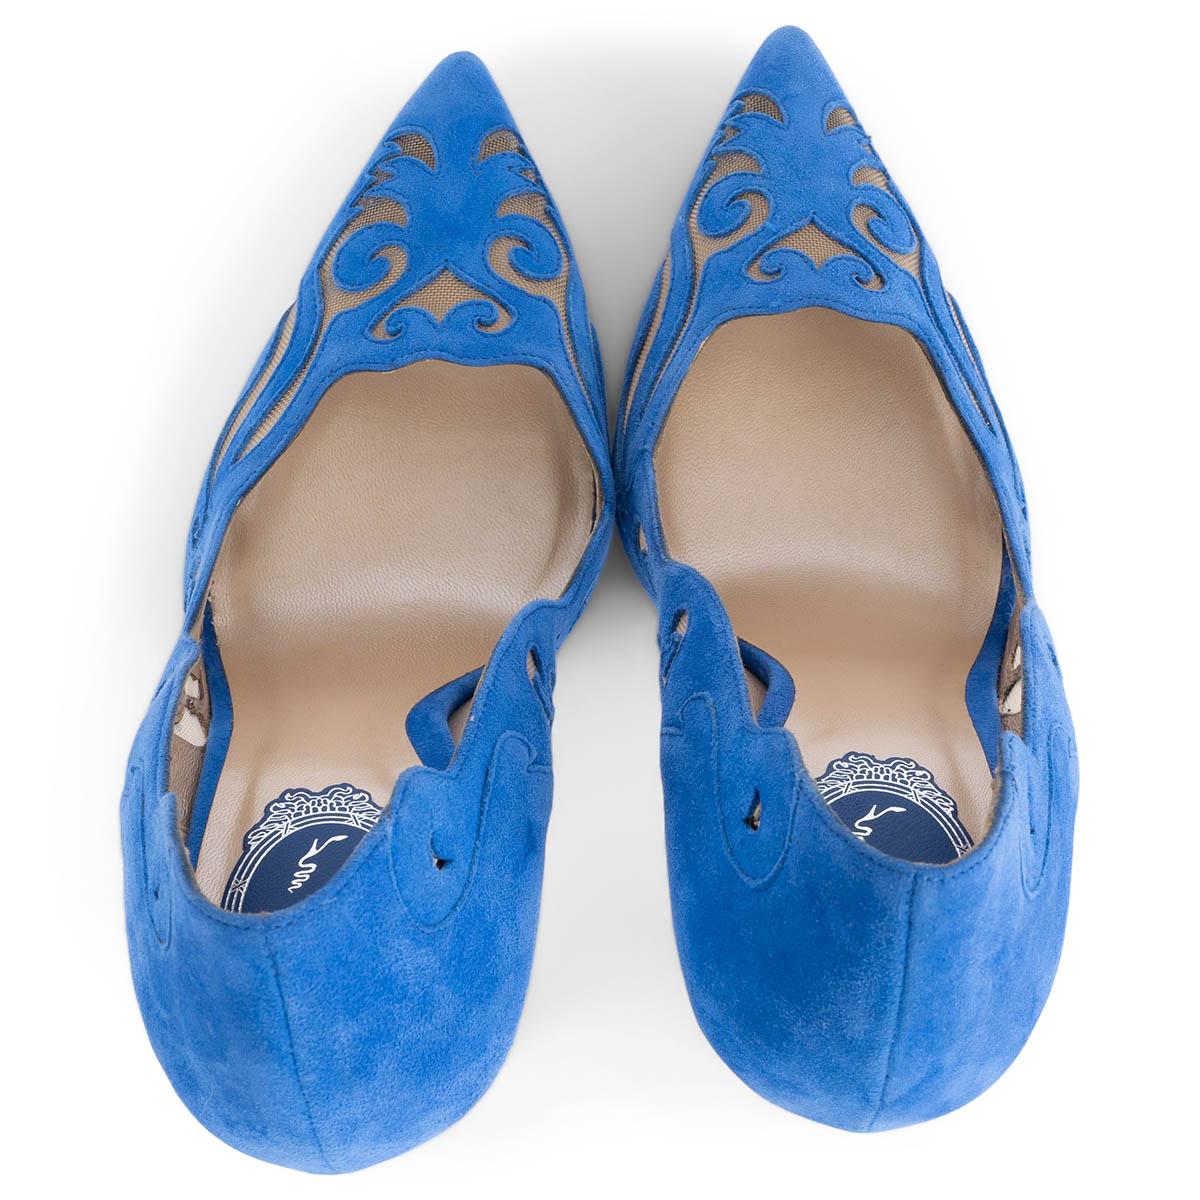 RENE CAOVILLA Chaussures à talons en daim bleu cobalt ILLUSION LASER-CUT 38,5 Pour femmes en vente